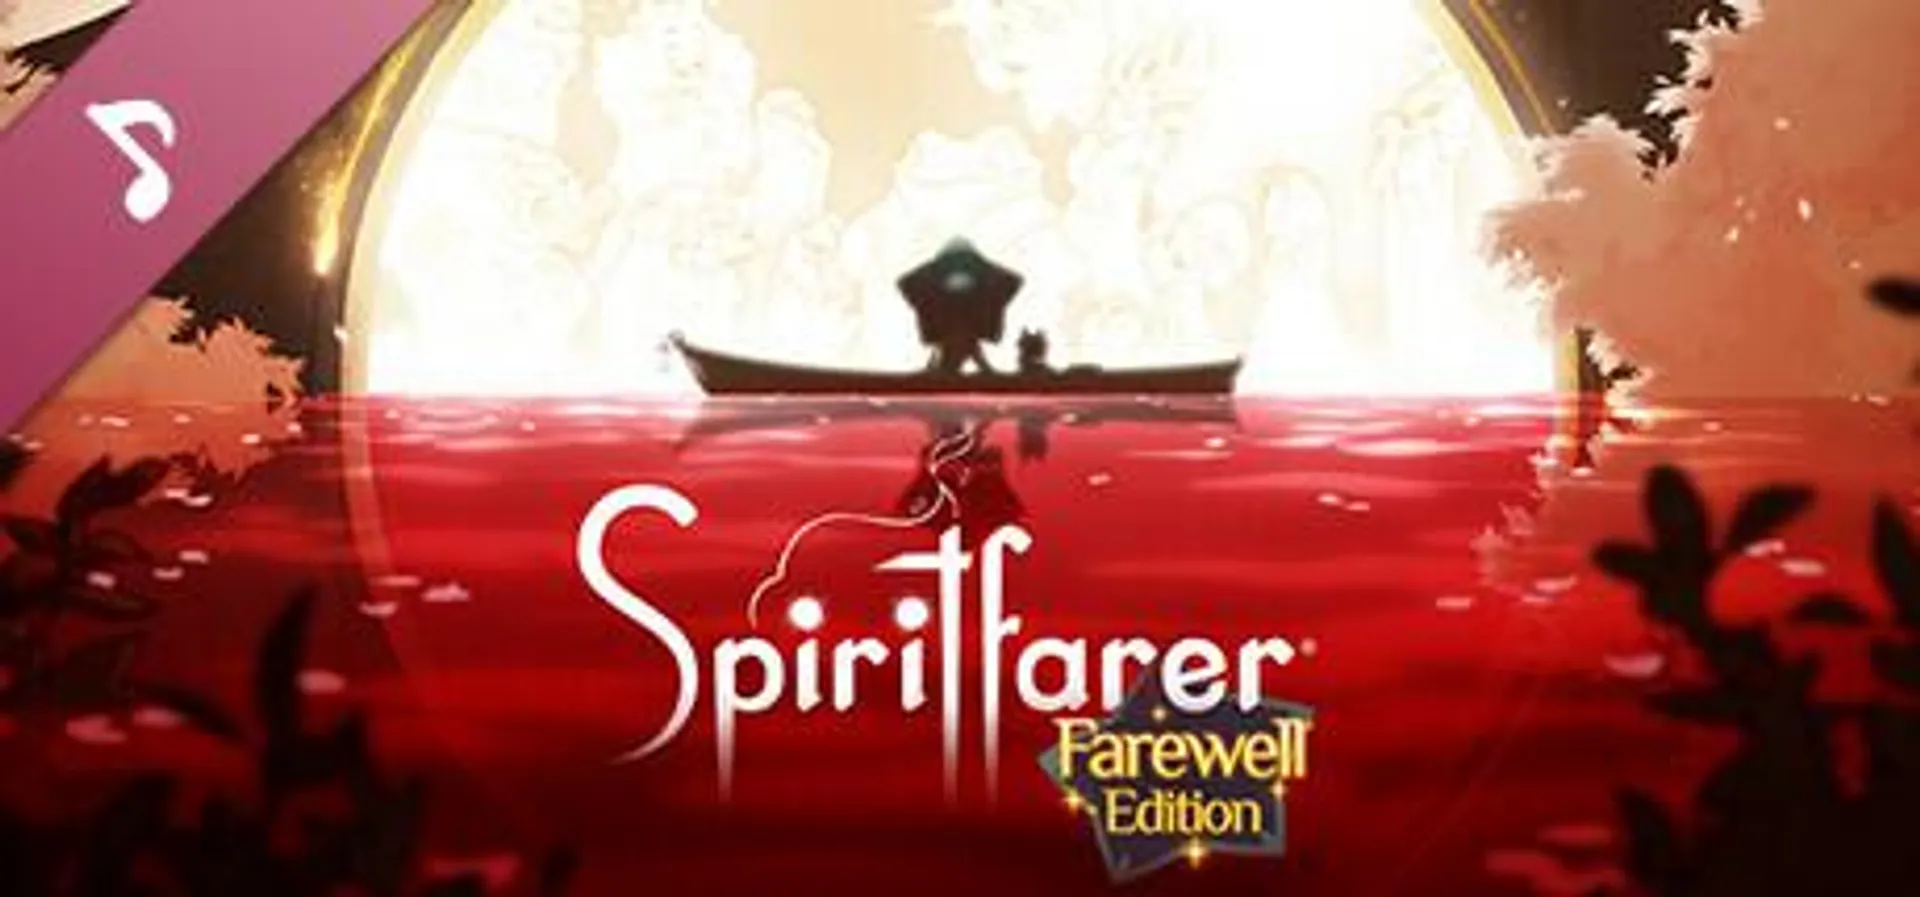 Spiritfarer®: Farewell Edition - OST